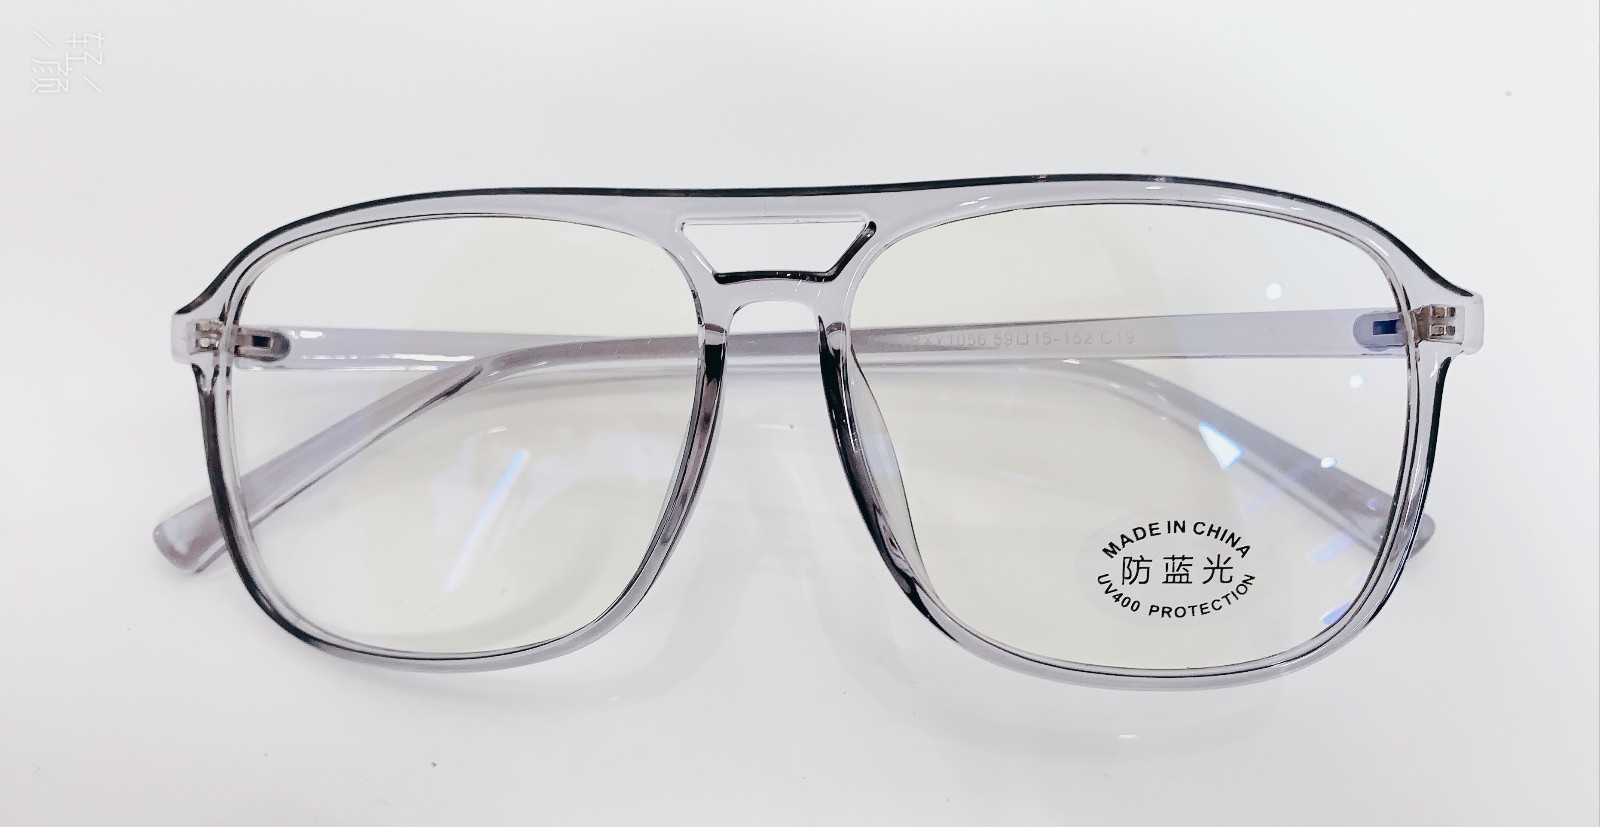 蓝光眼镜 Blue-Blocking Light glasses防蓝光电脑辐射护目眼镜-阿里巴巴